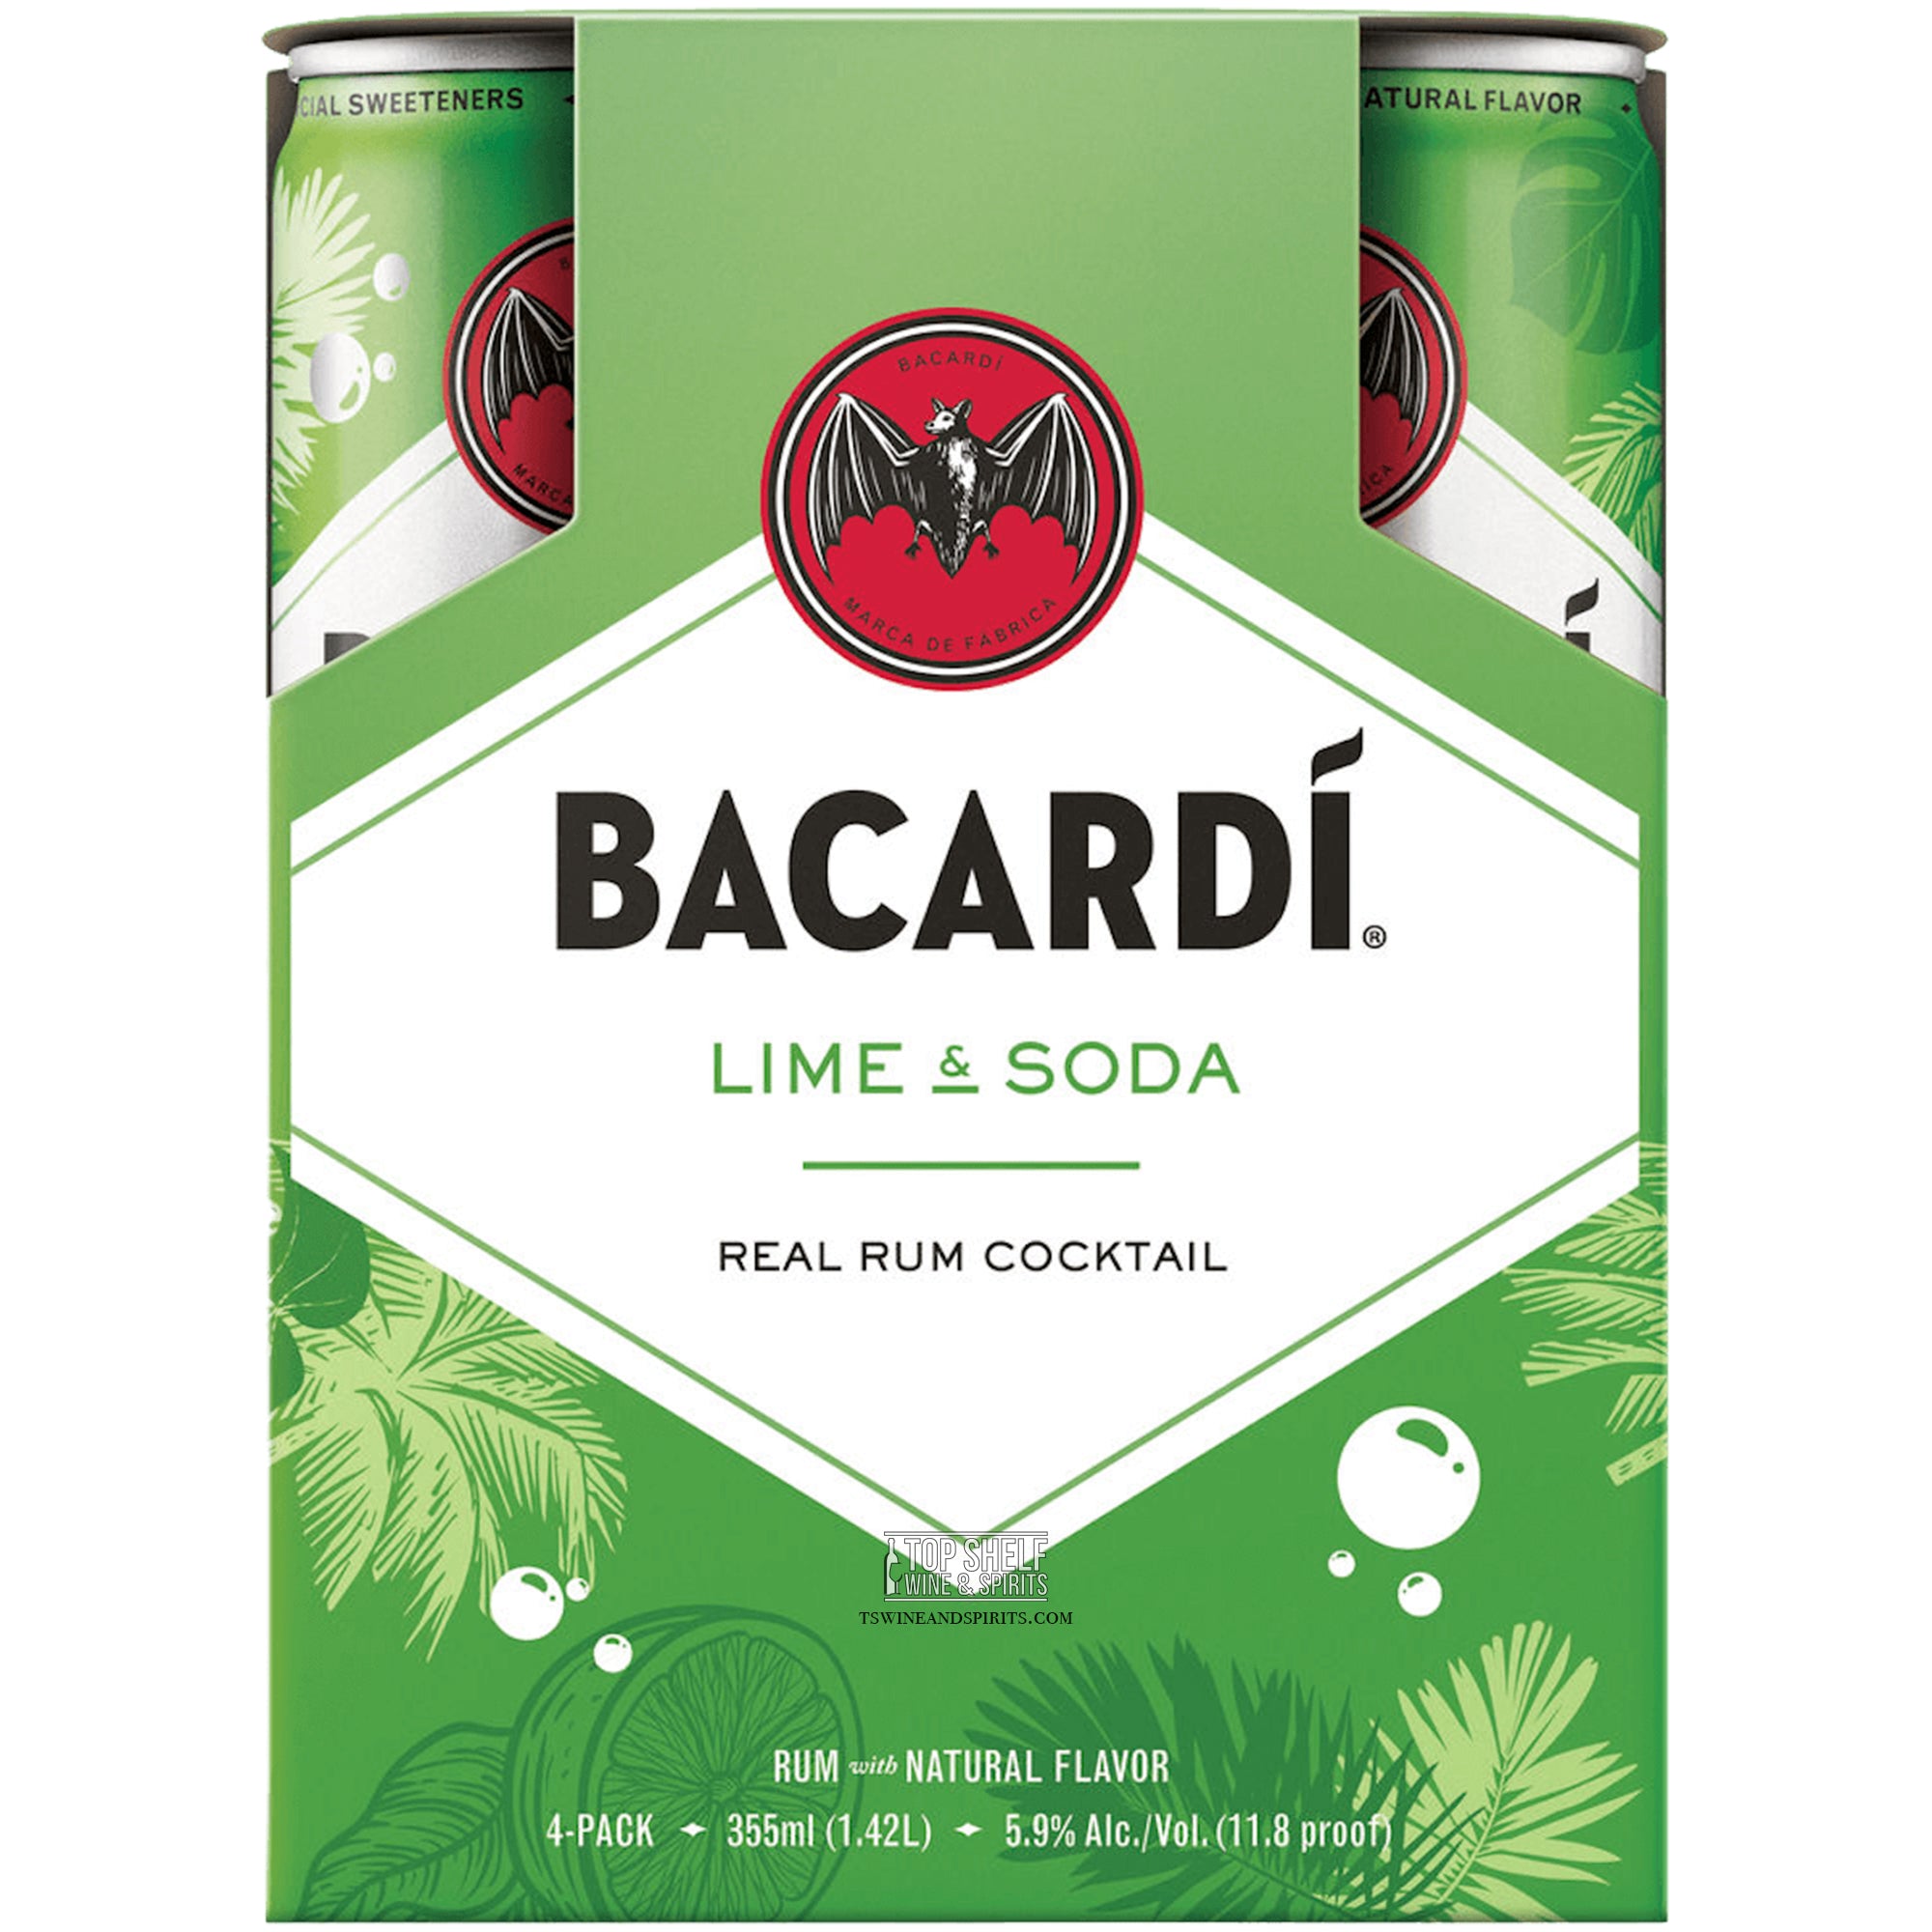 Bacardí Lime & Soda 4 Pack Cans